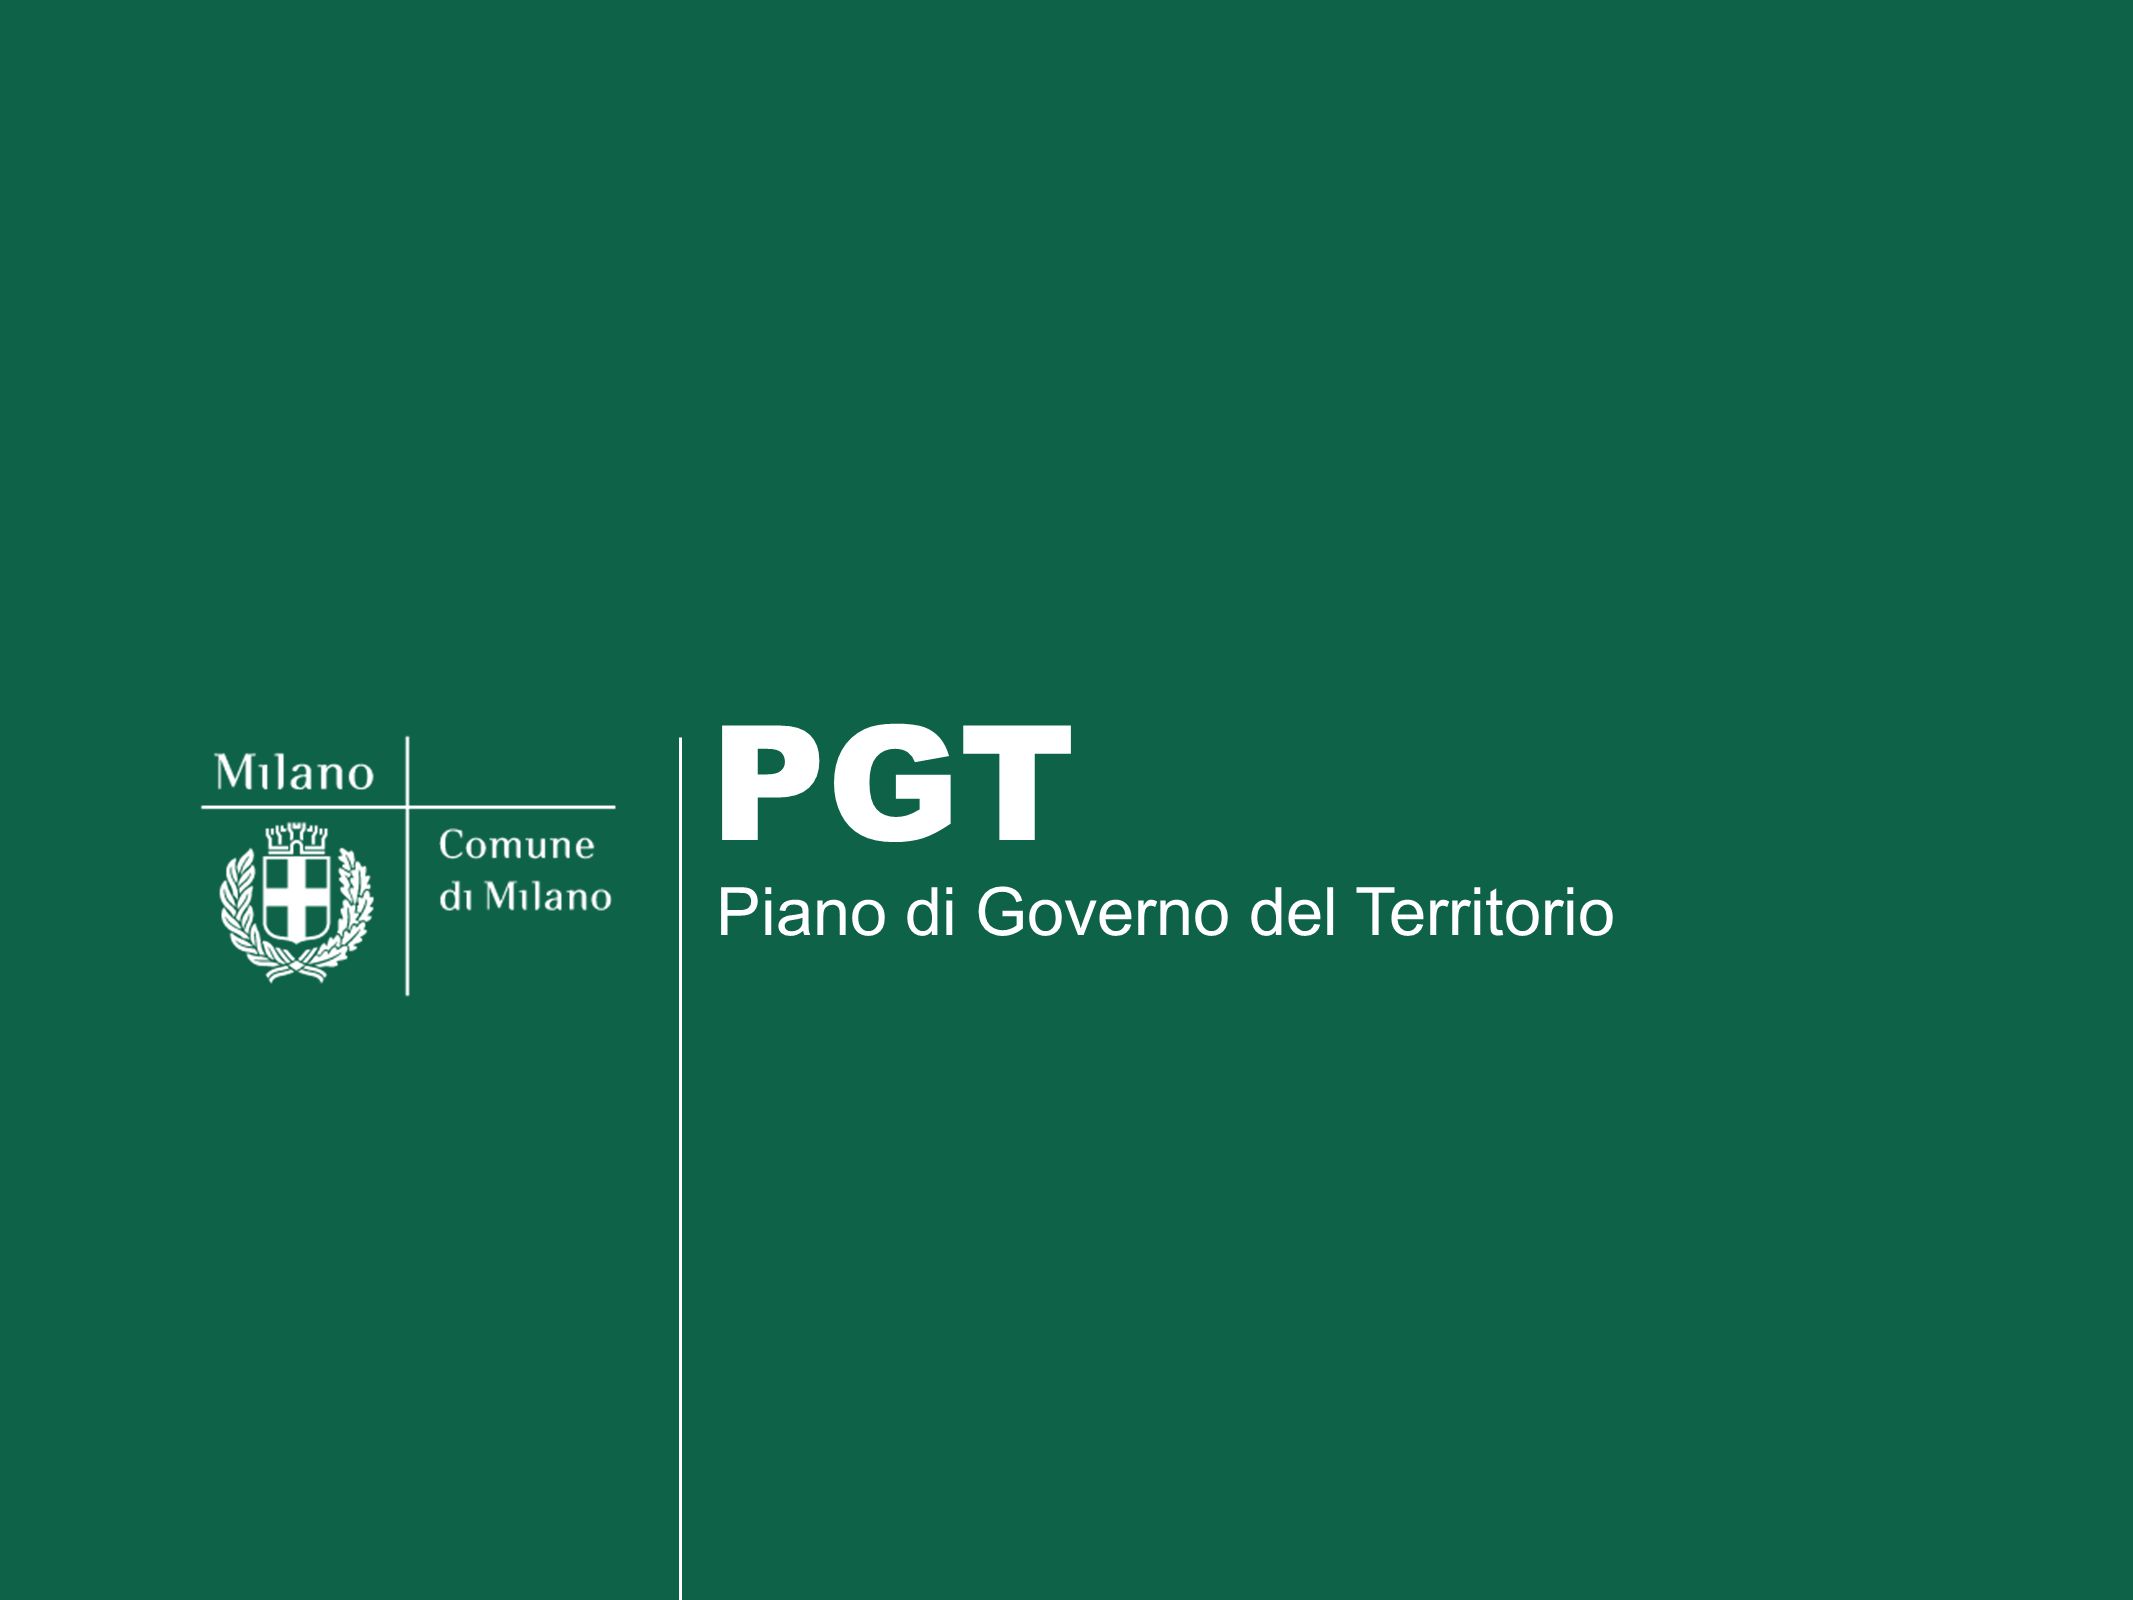 PGT Piano di Governo del Territorio